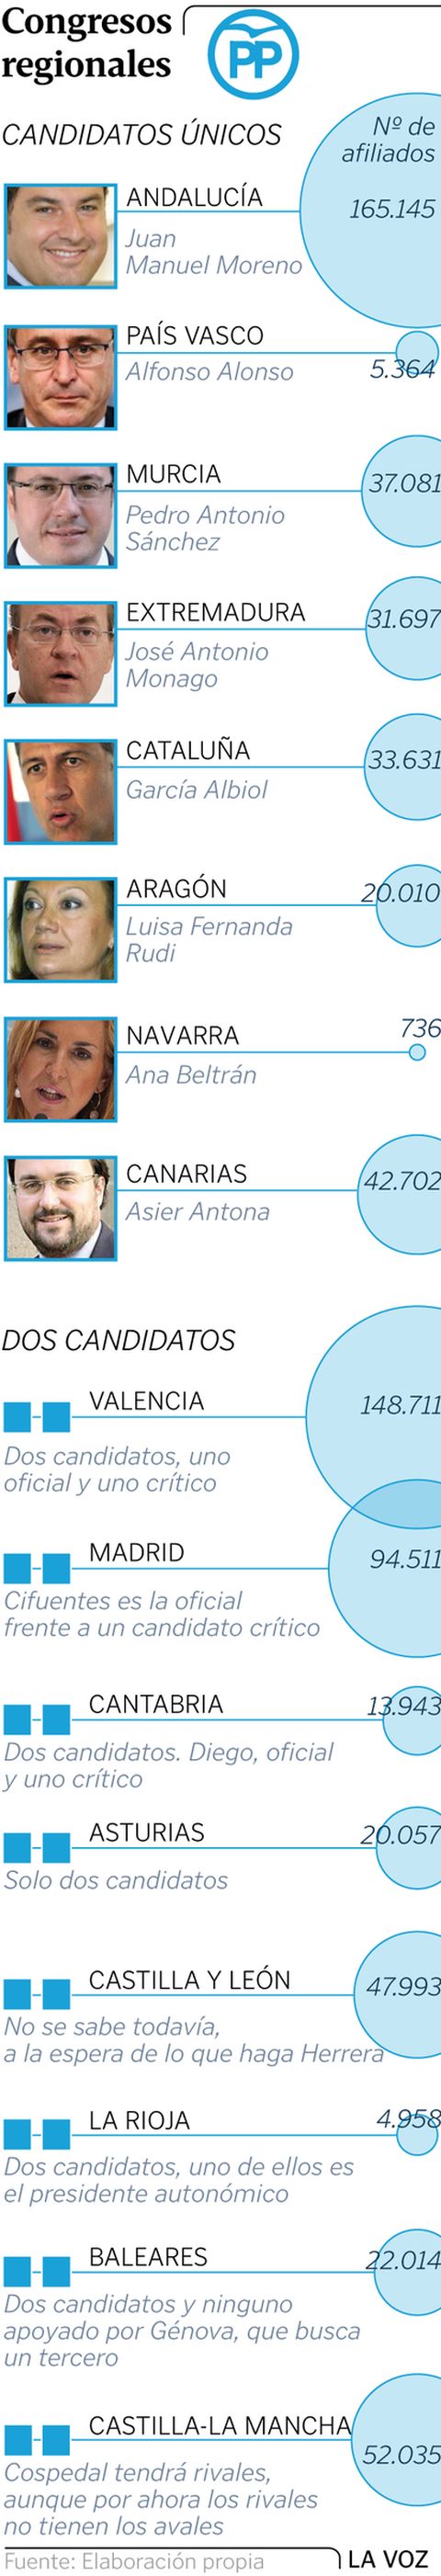 Candidatos de los congresos regionales del PP